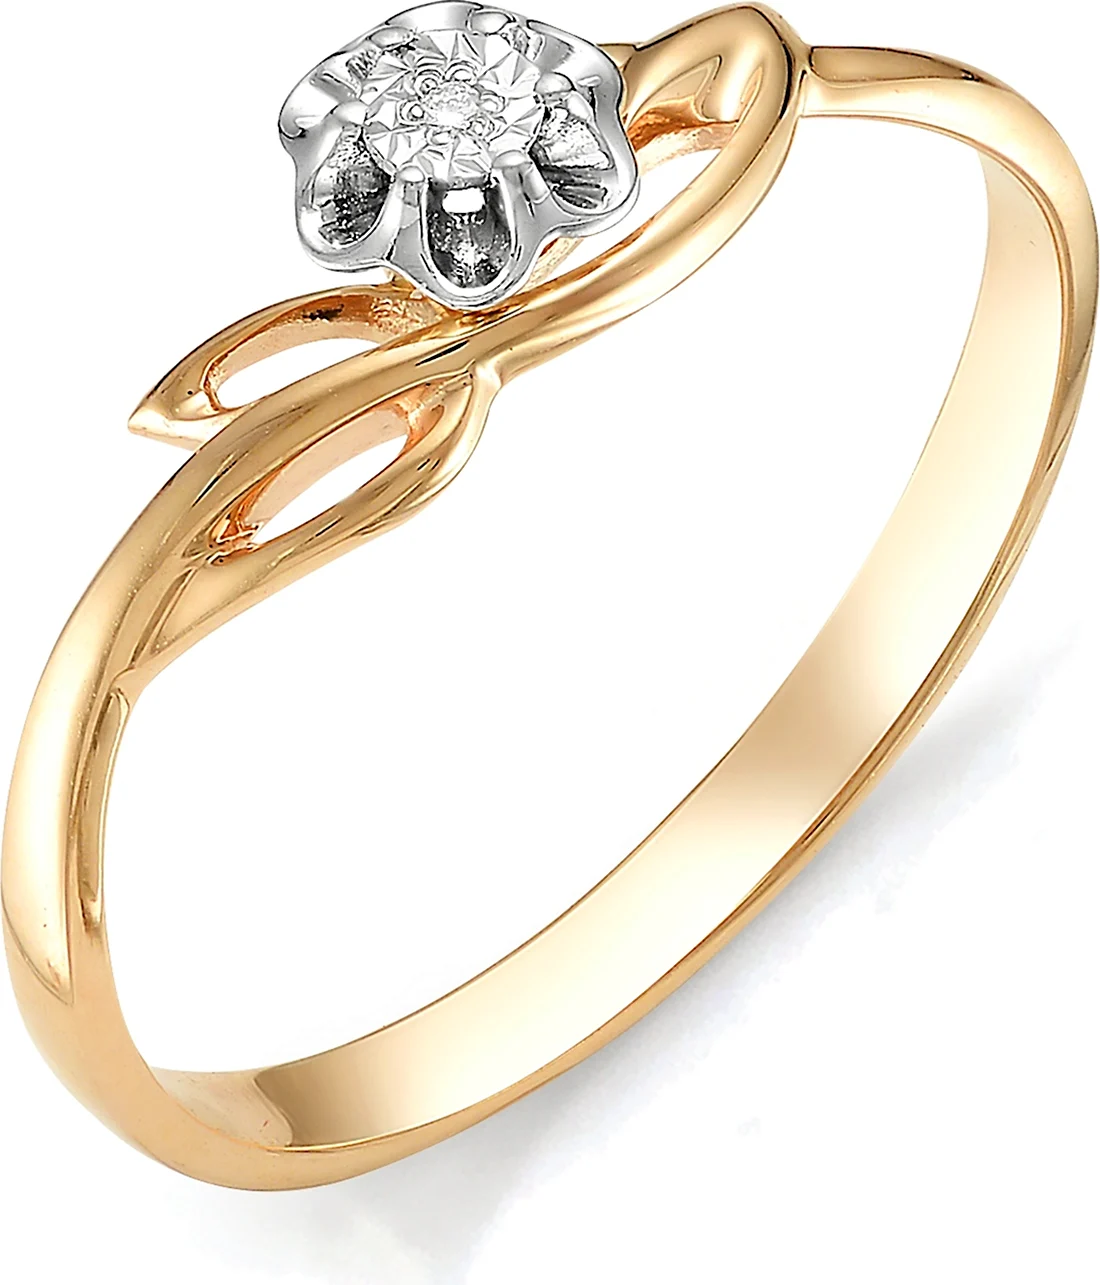 Кольцо Алькор из золота с бриллиантом